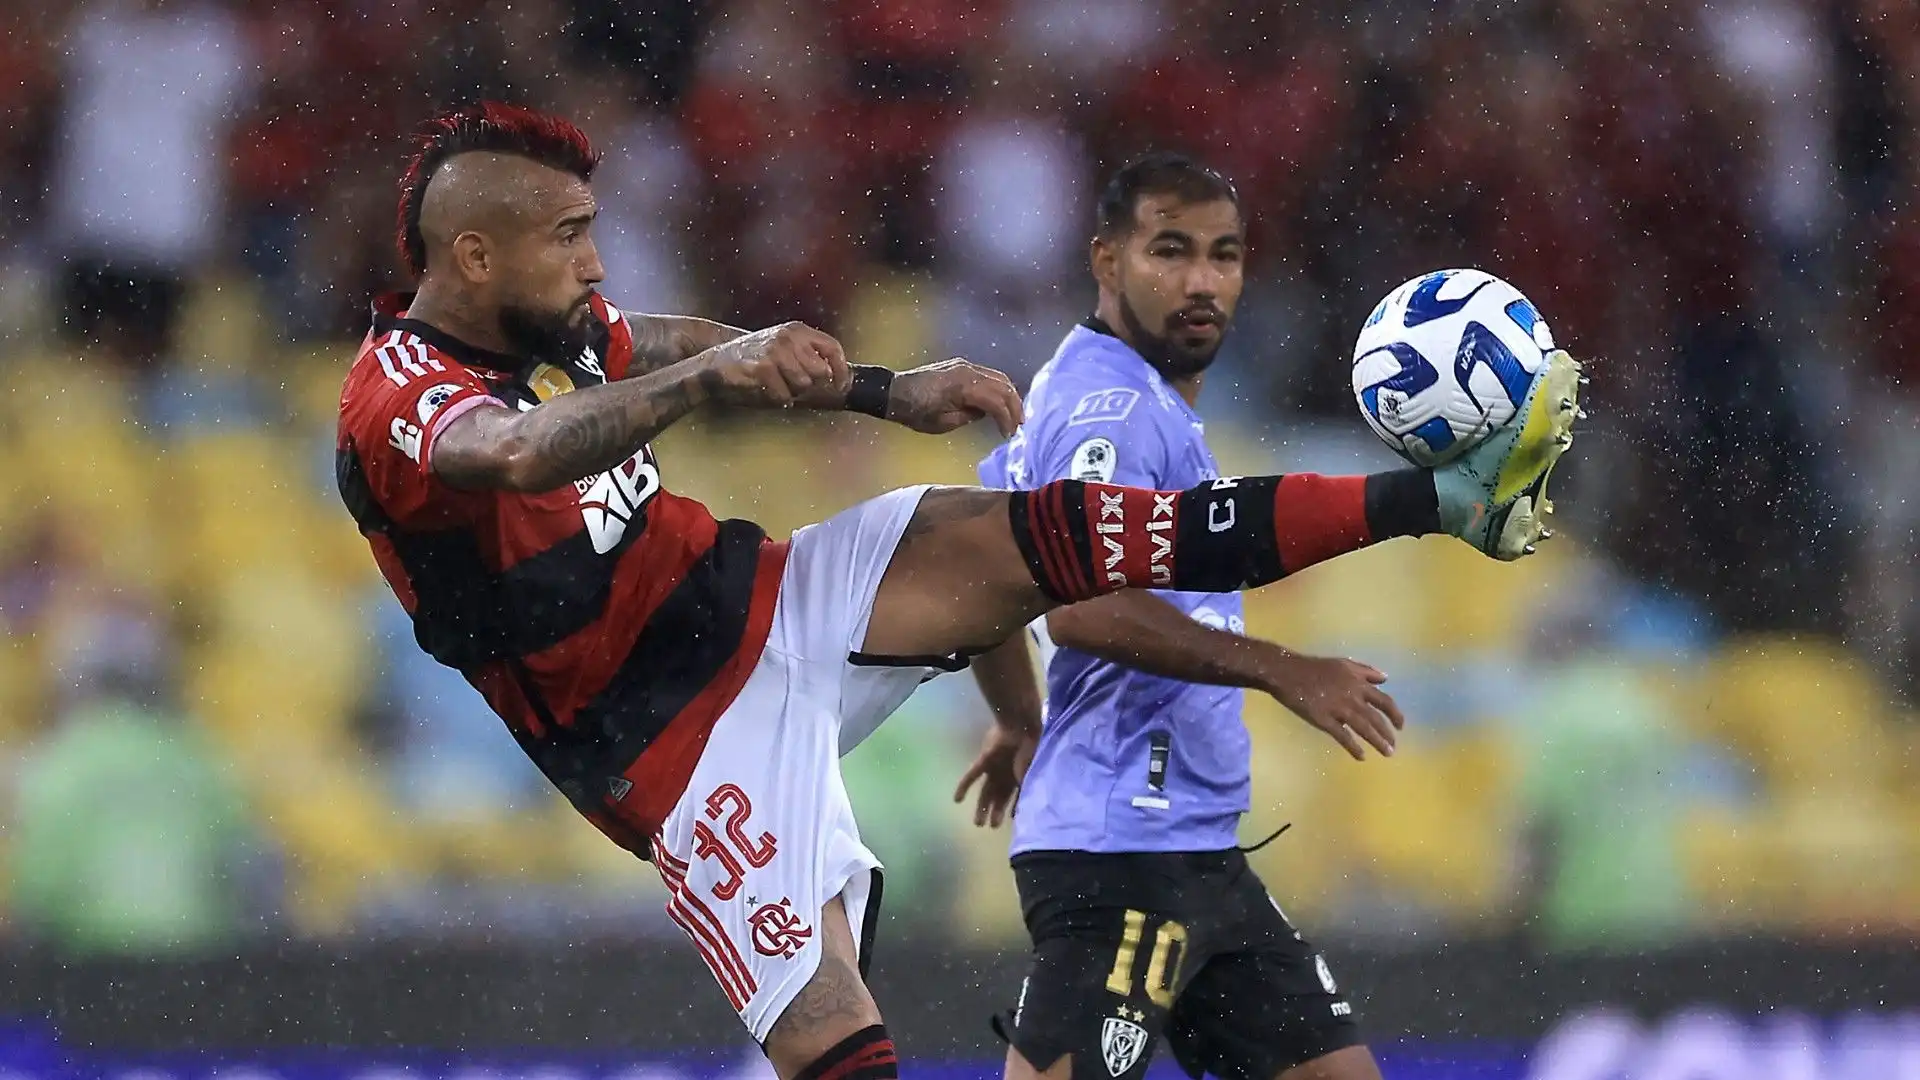 Il centrocampista cileno ha sfoggiato una grossa cresta rossa nel match contro l'Independiente del Valle